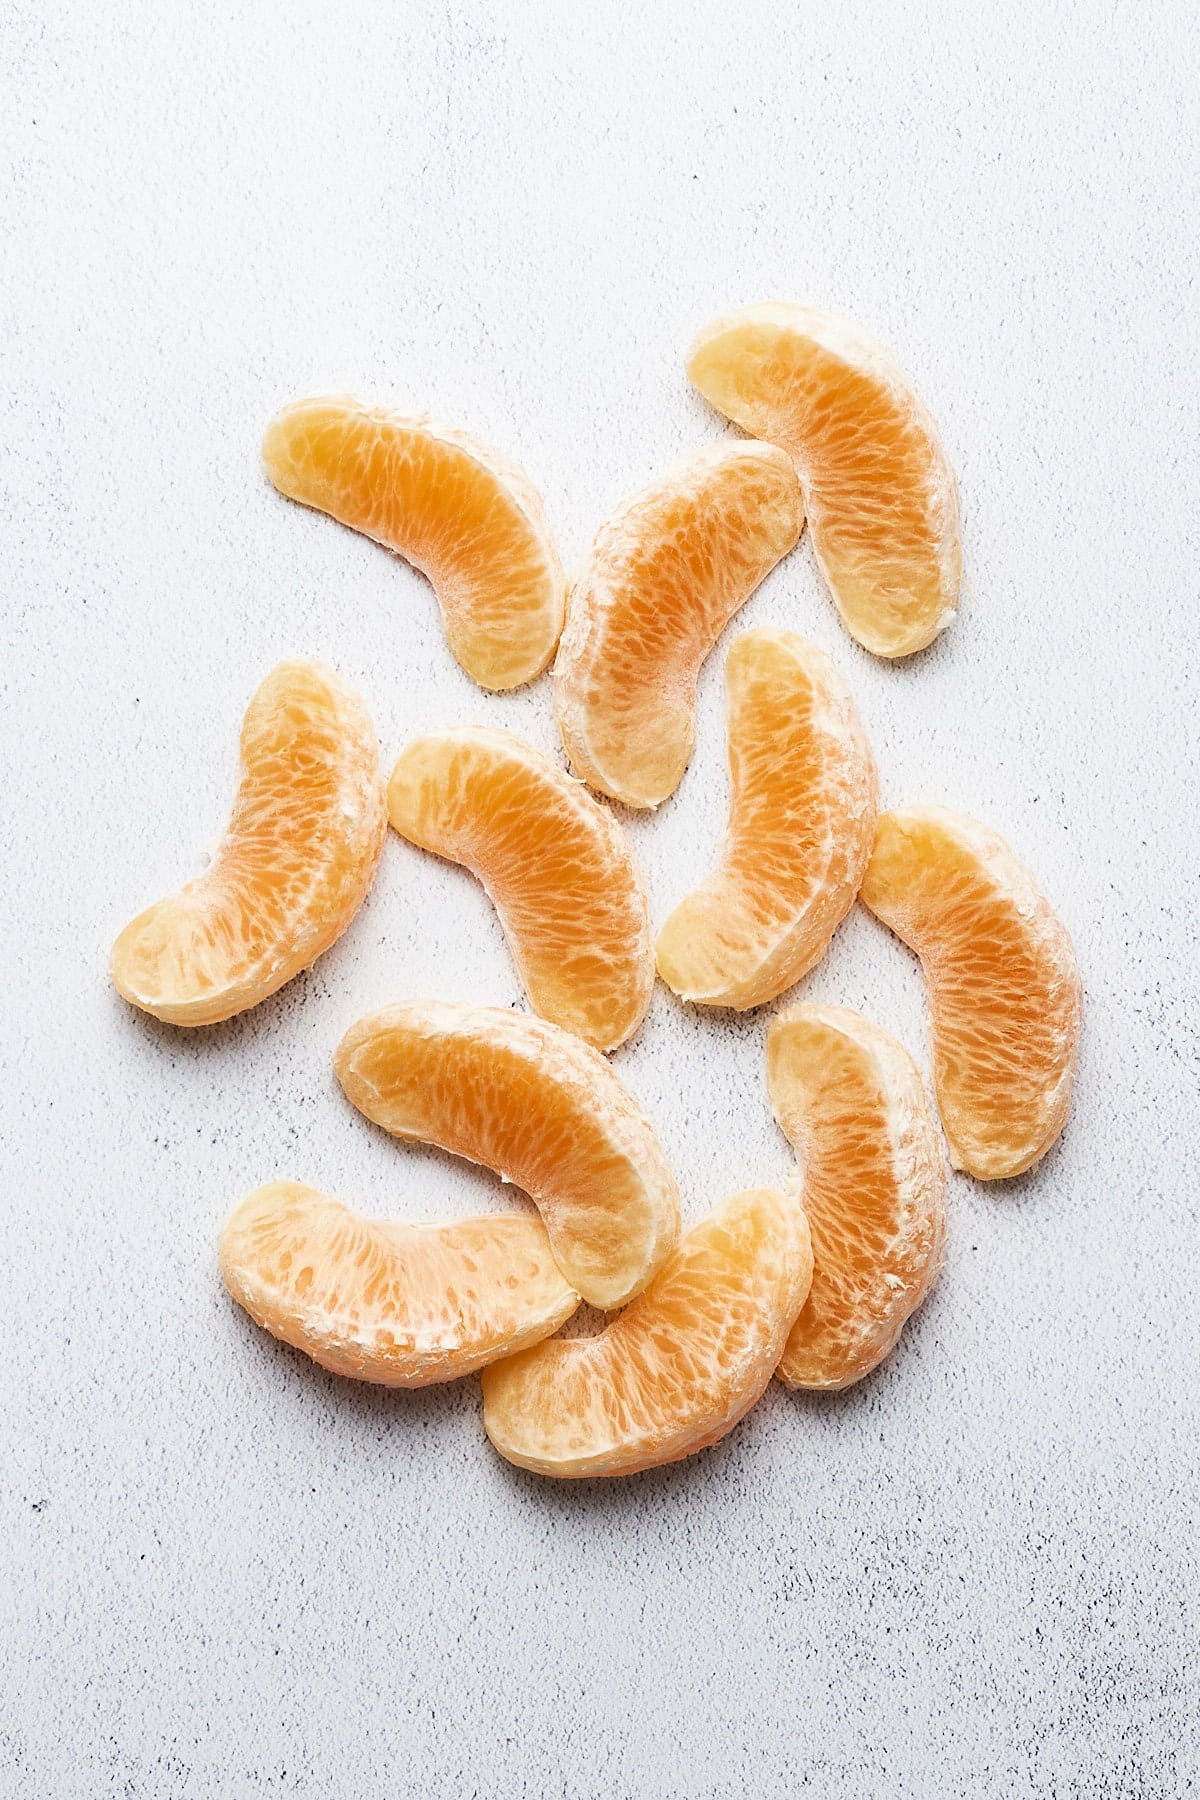 Peeled orange pieces.